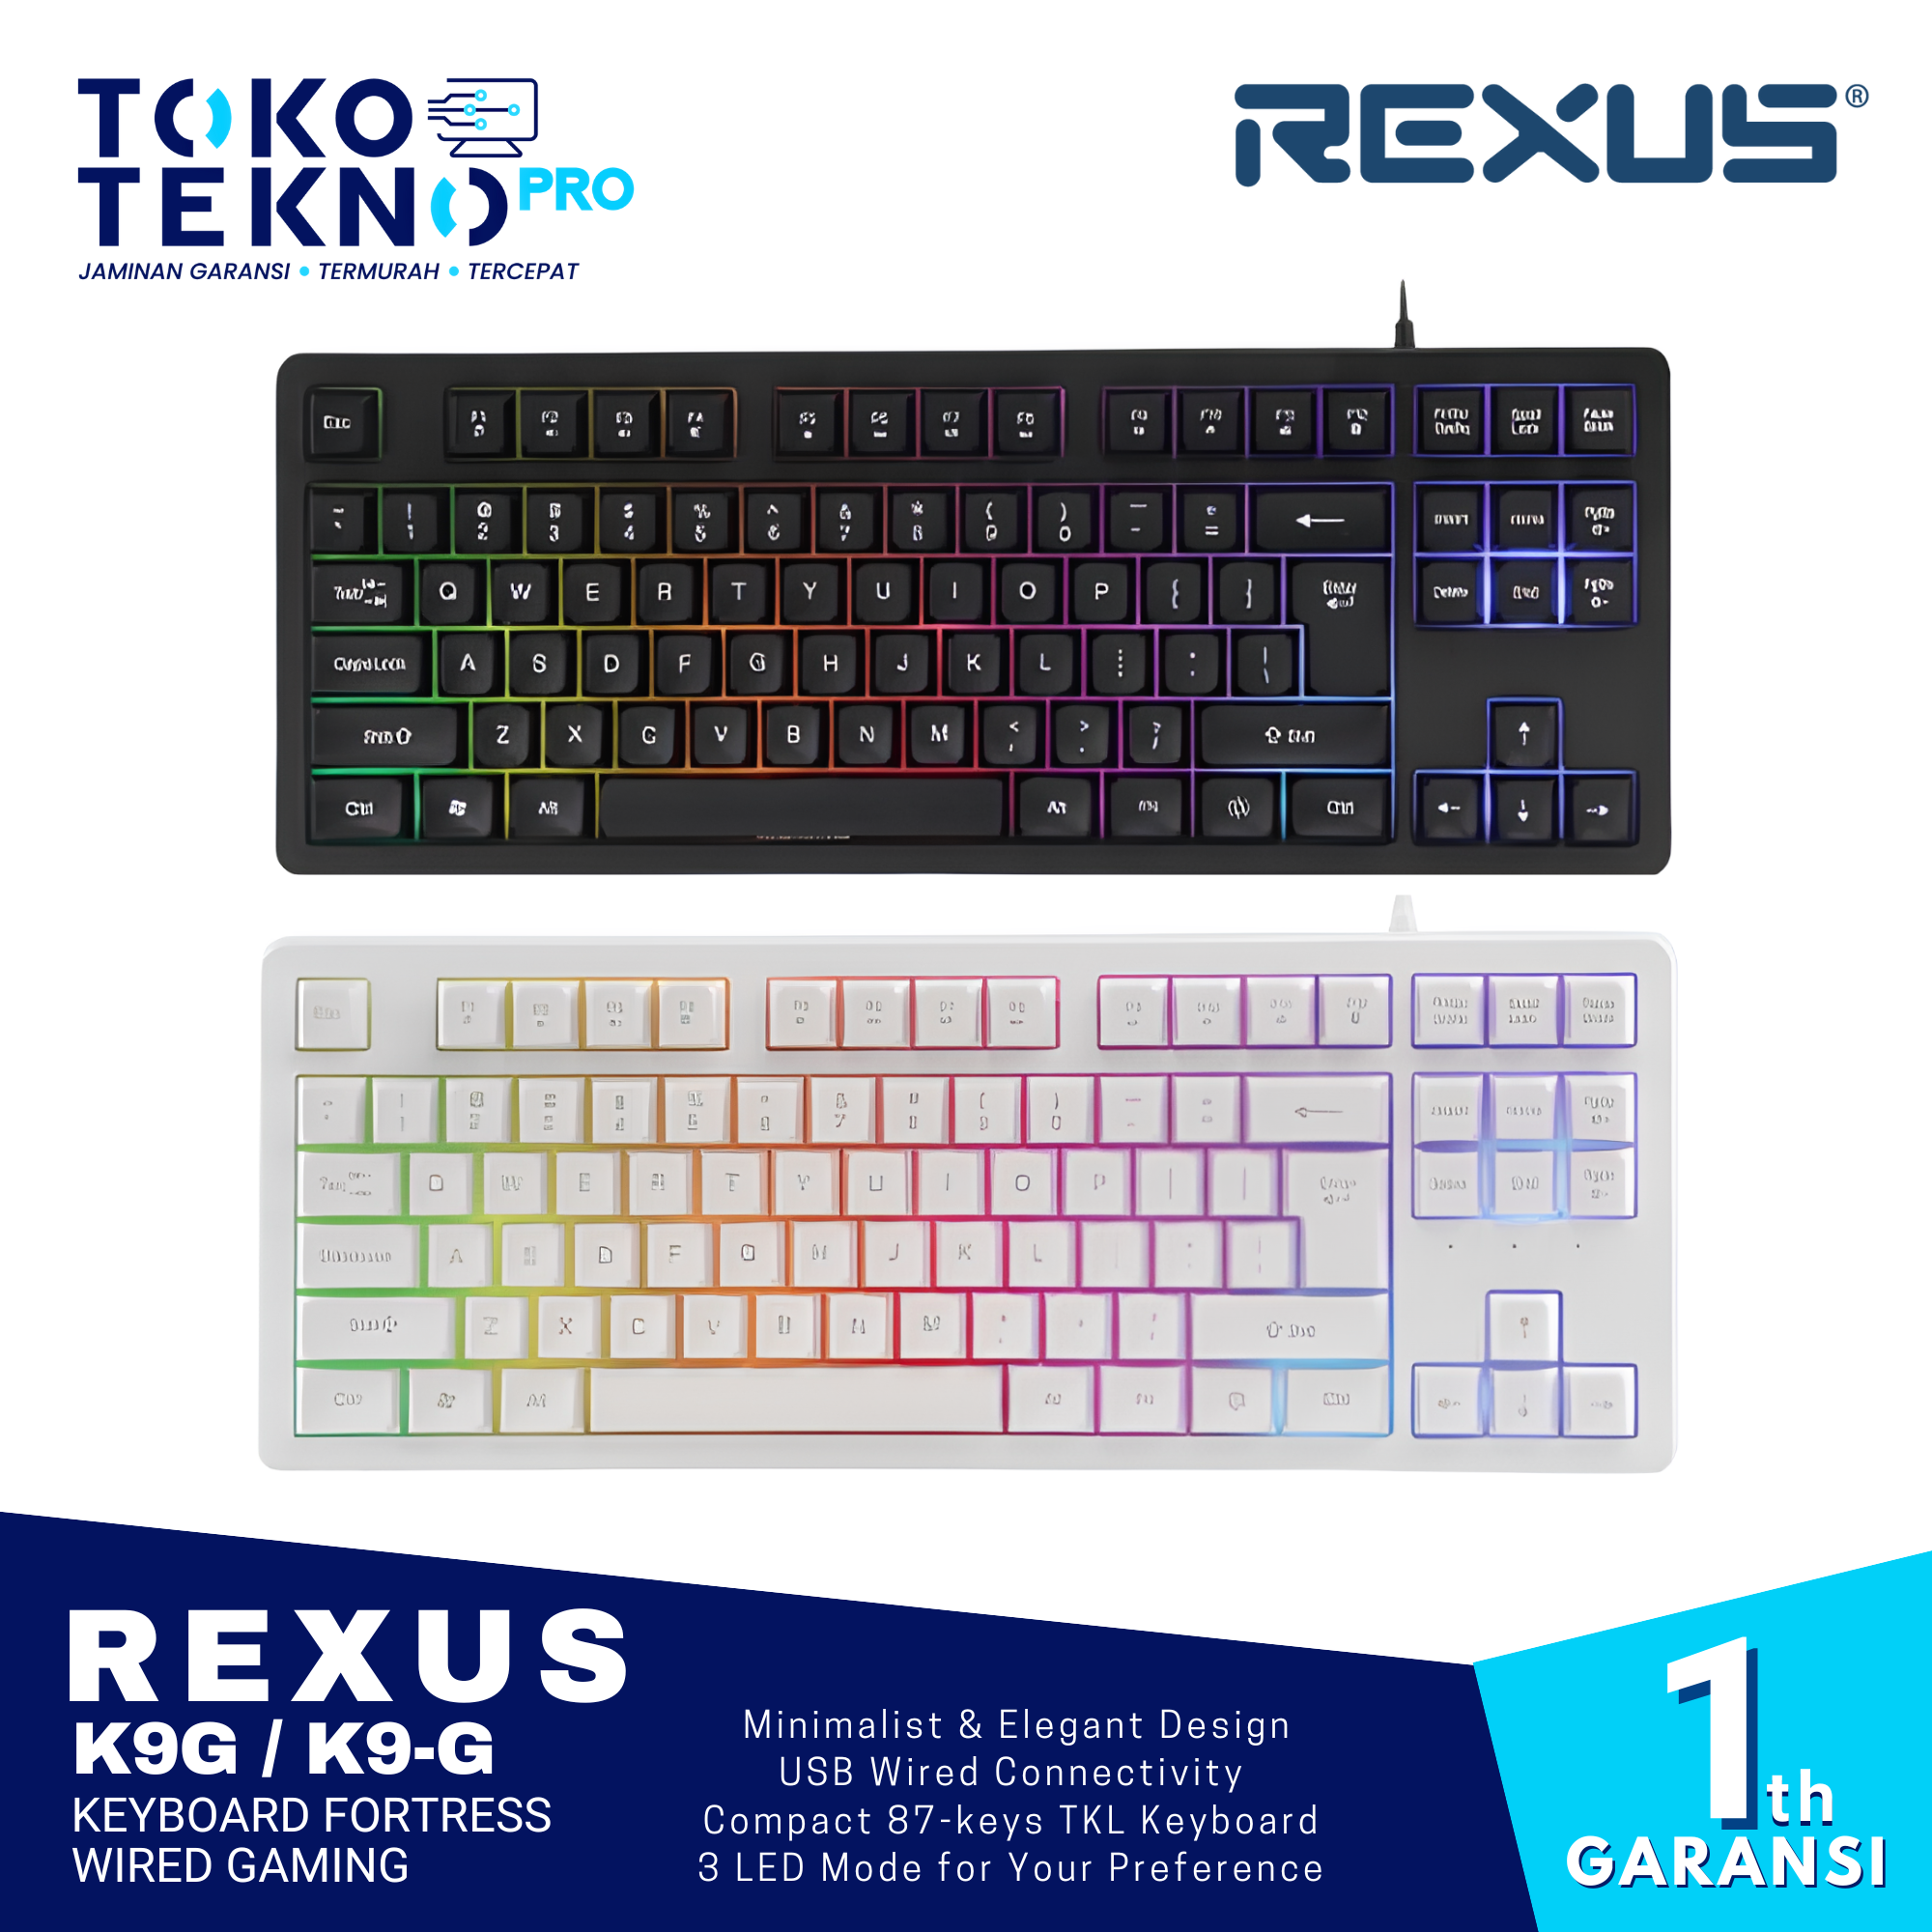 Rexus K9G Keyboard Fortress